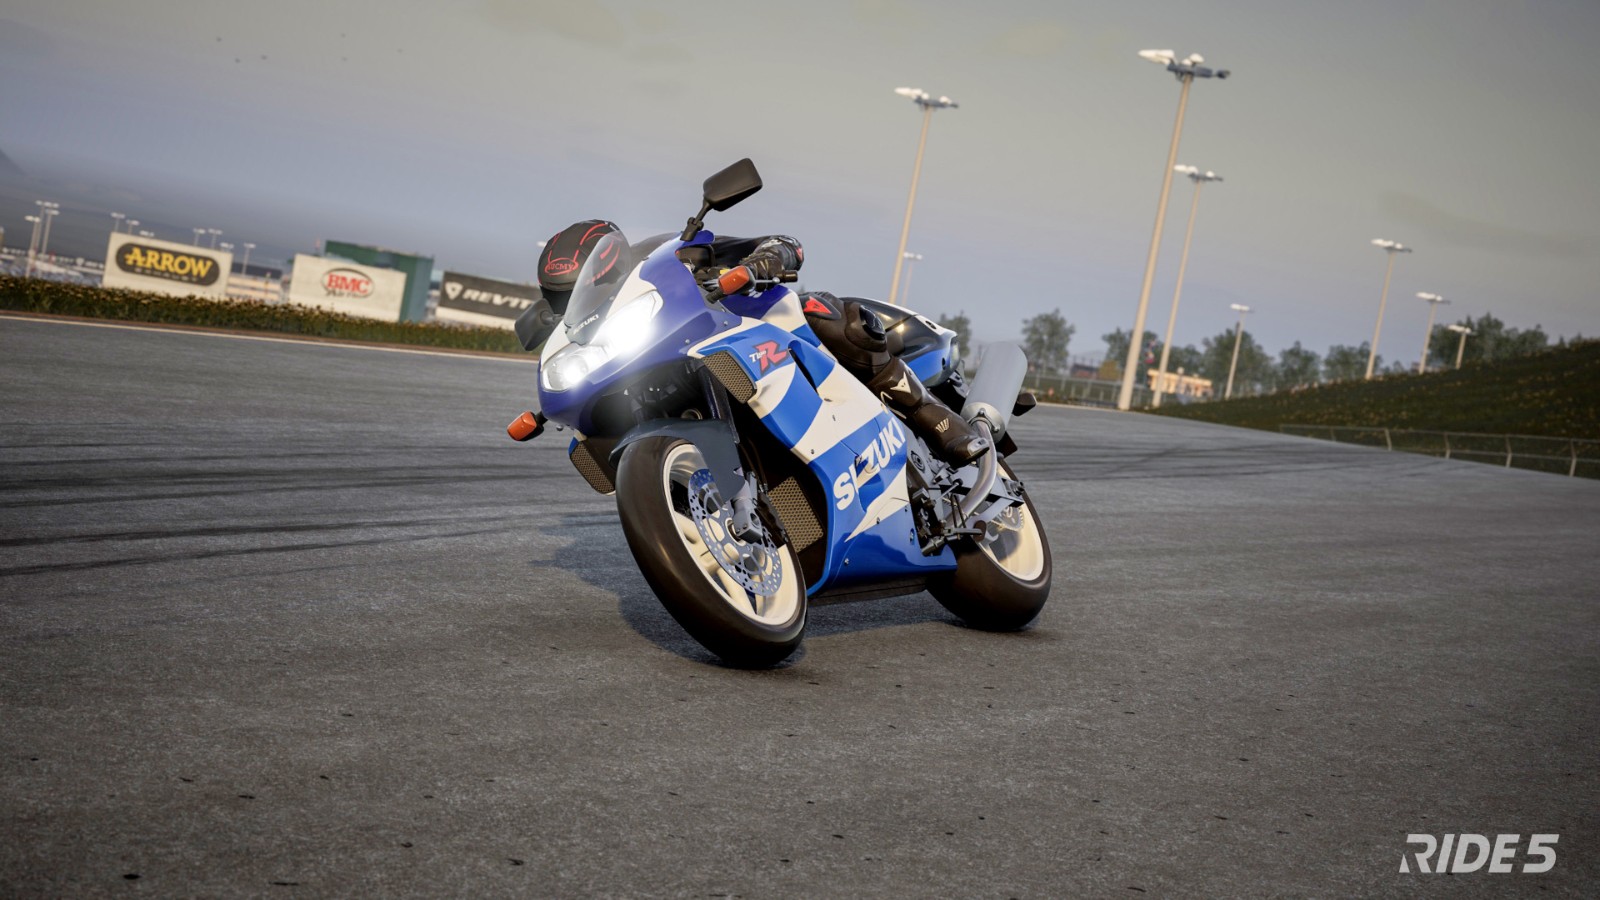 摩托竞速游戏《极速骑行5》公布 截图和预告片分享